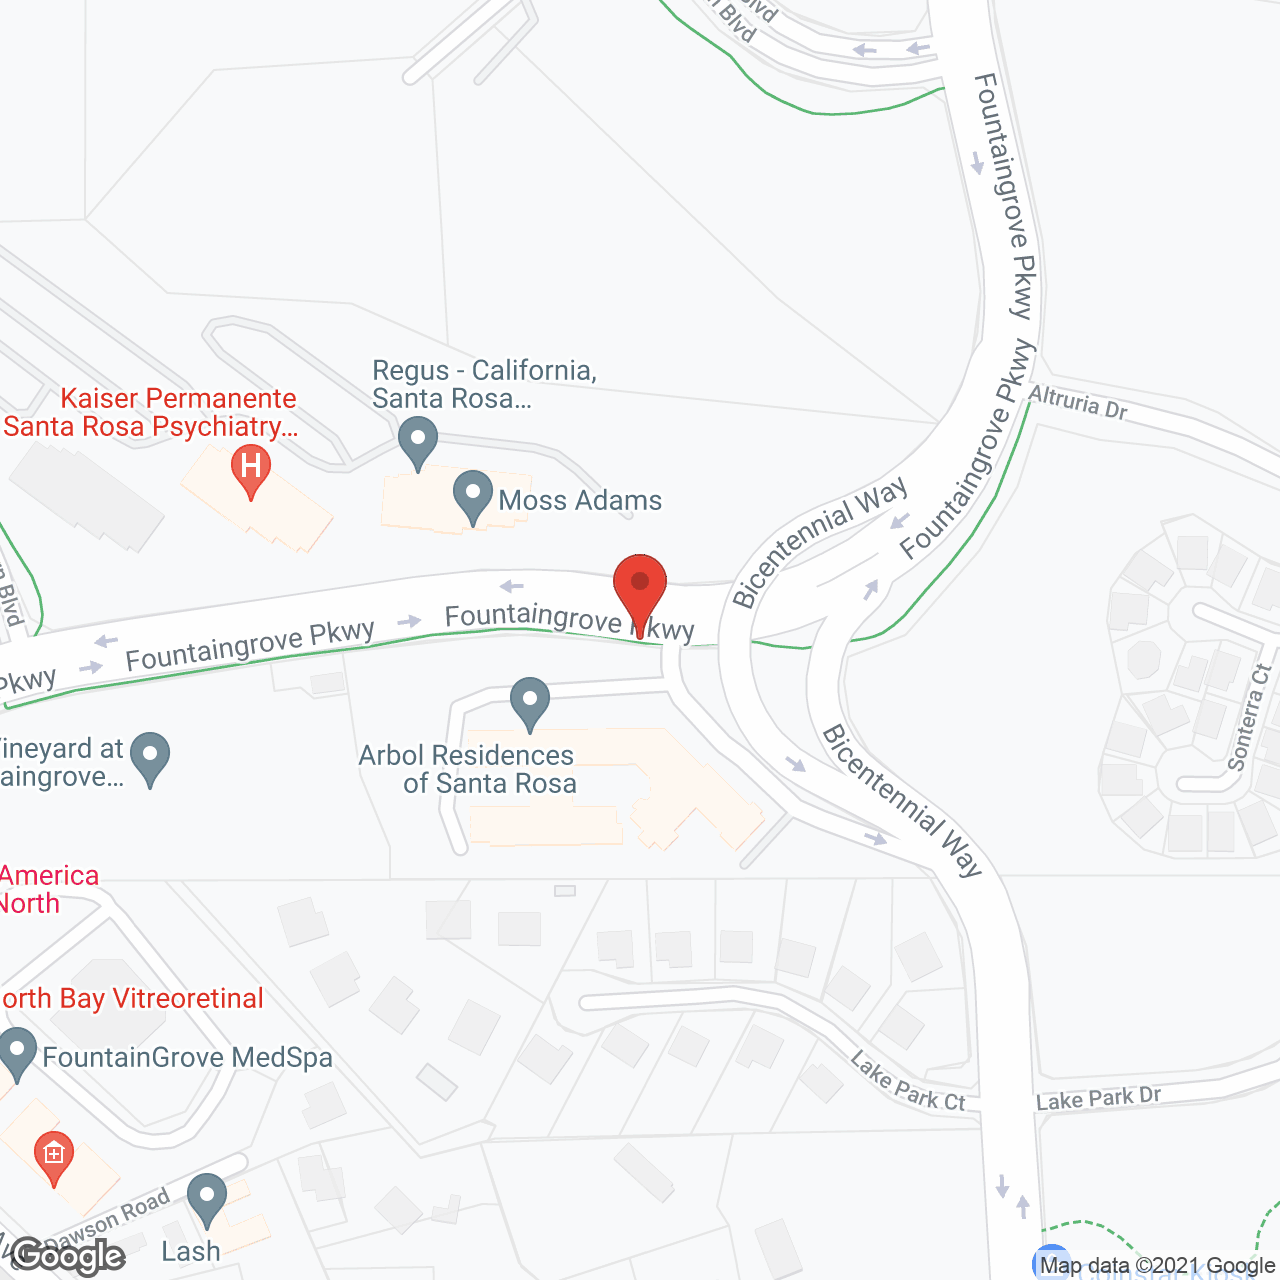 Arbol Residences of Santa Rosa in google map